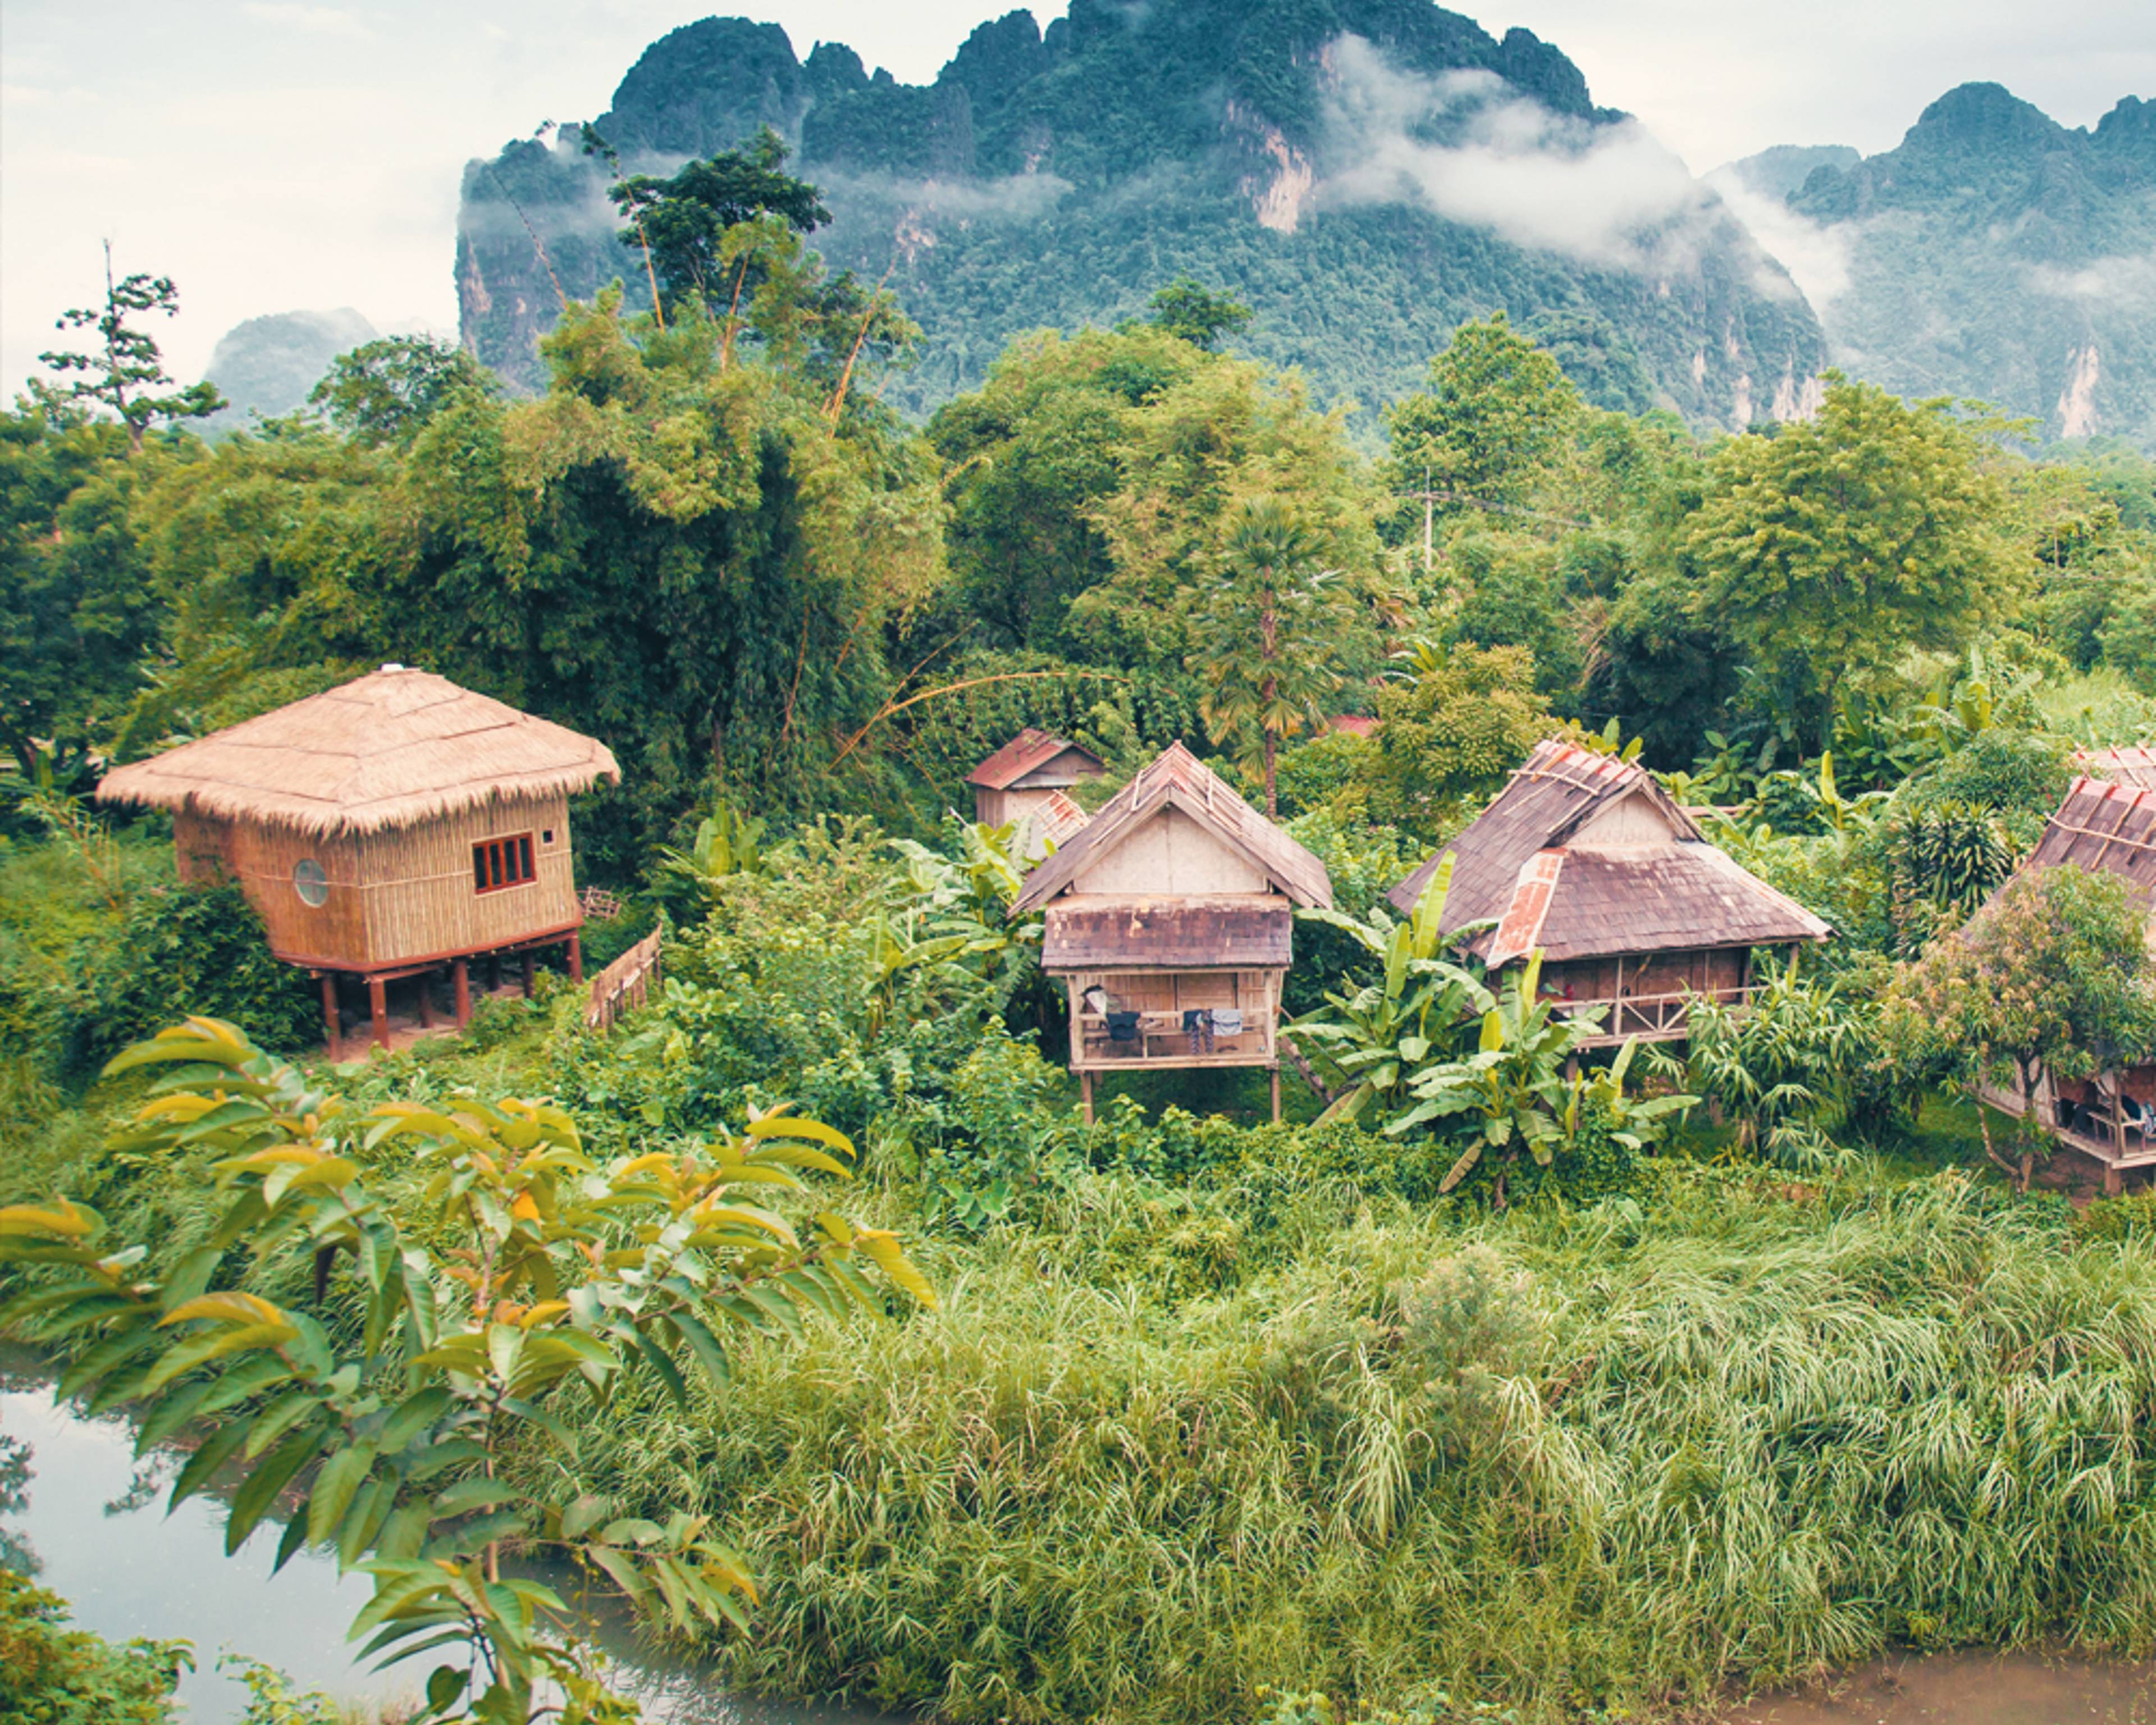 Viaggi in Laos in inverno - Viaggi e Tour su Misura